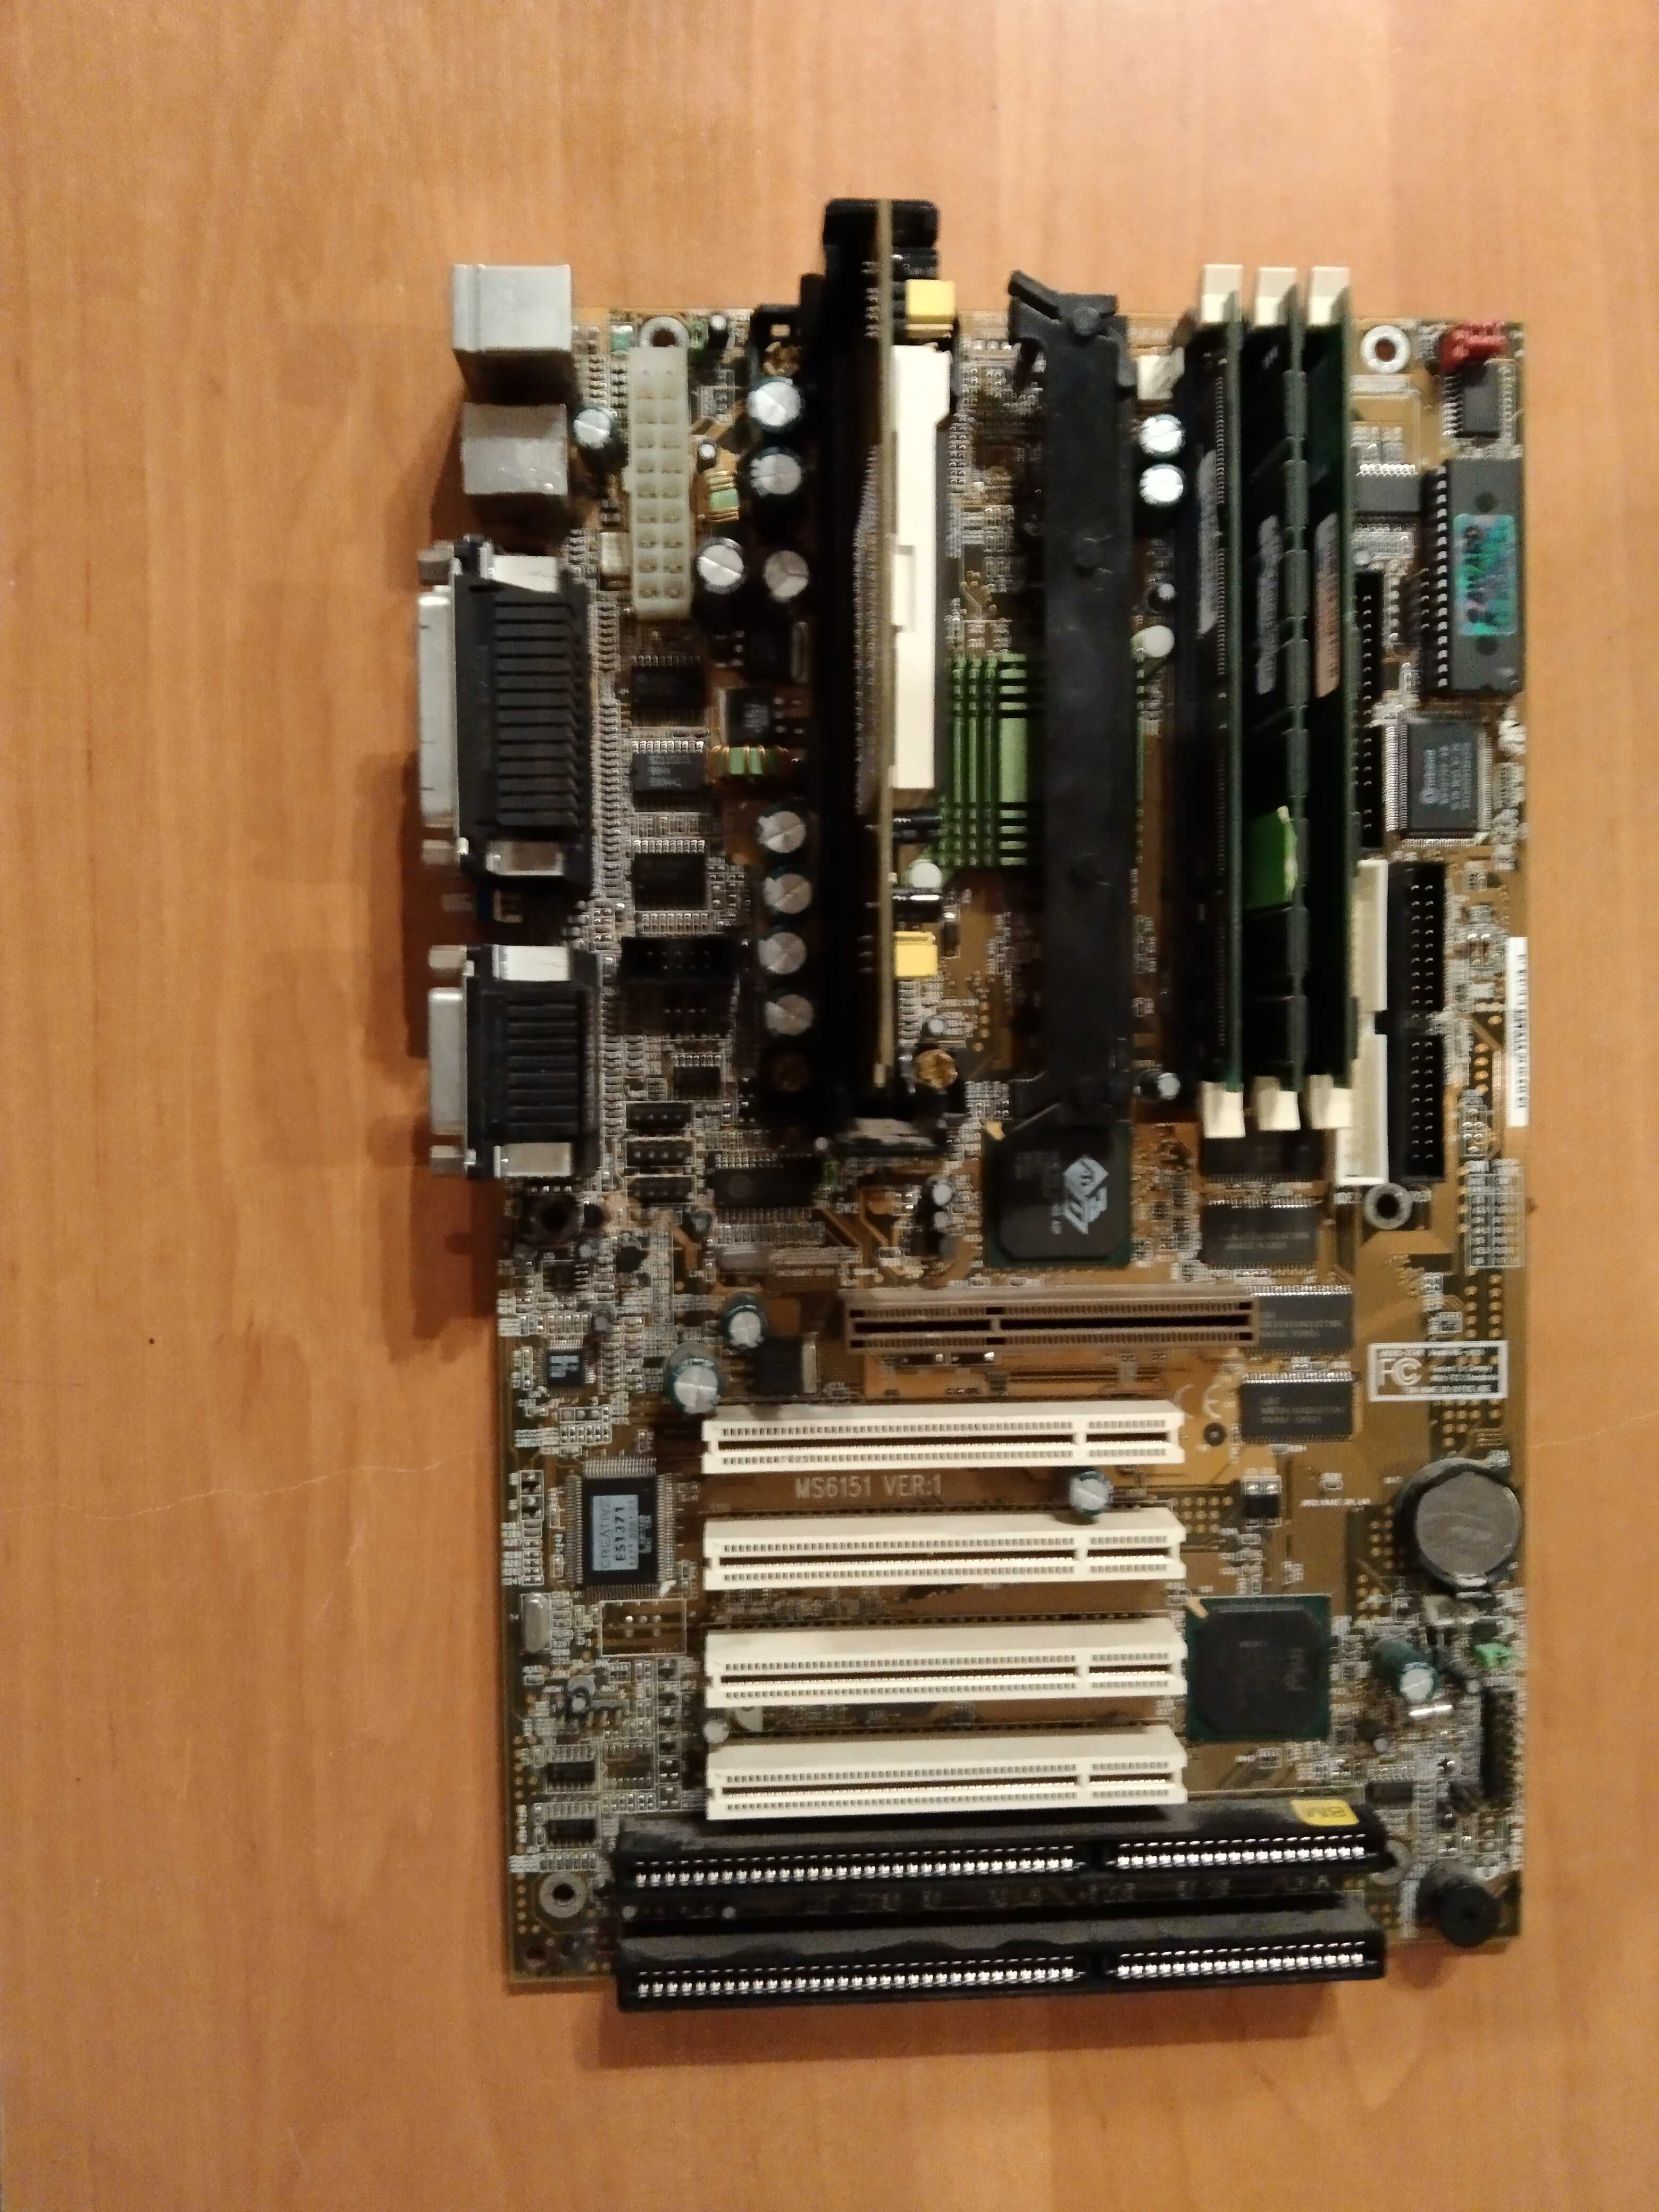 Płyta główna MSI ms6151 i procesor i ram